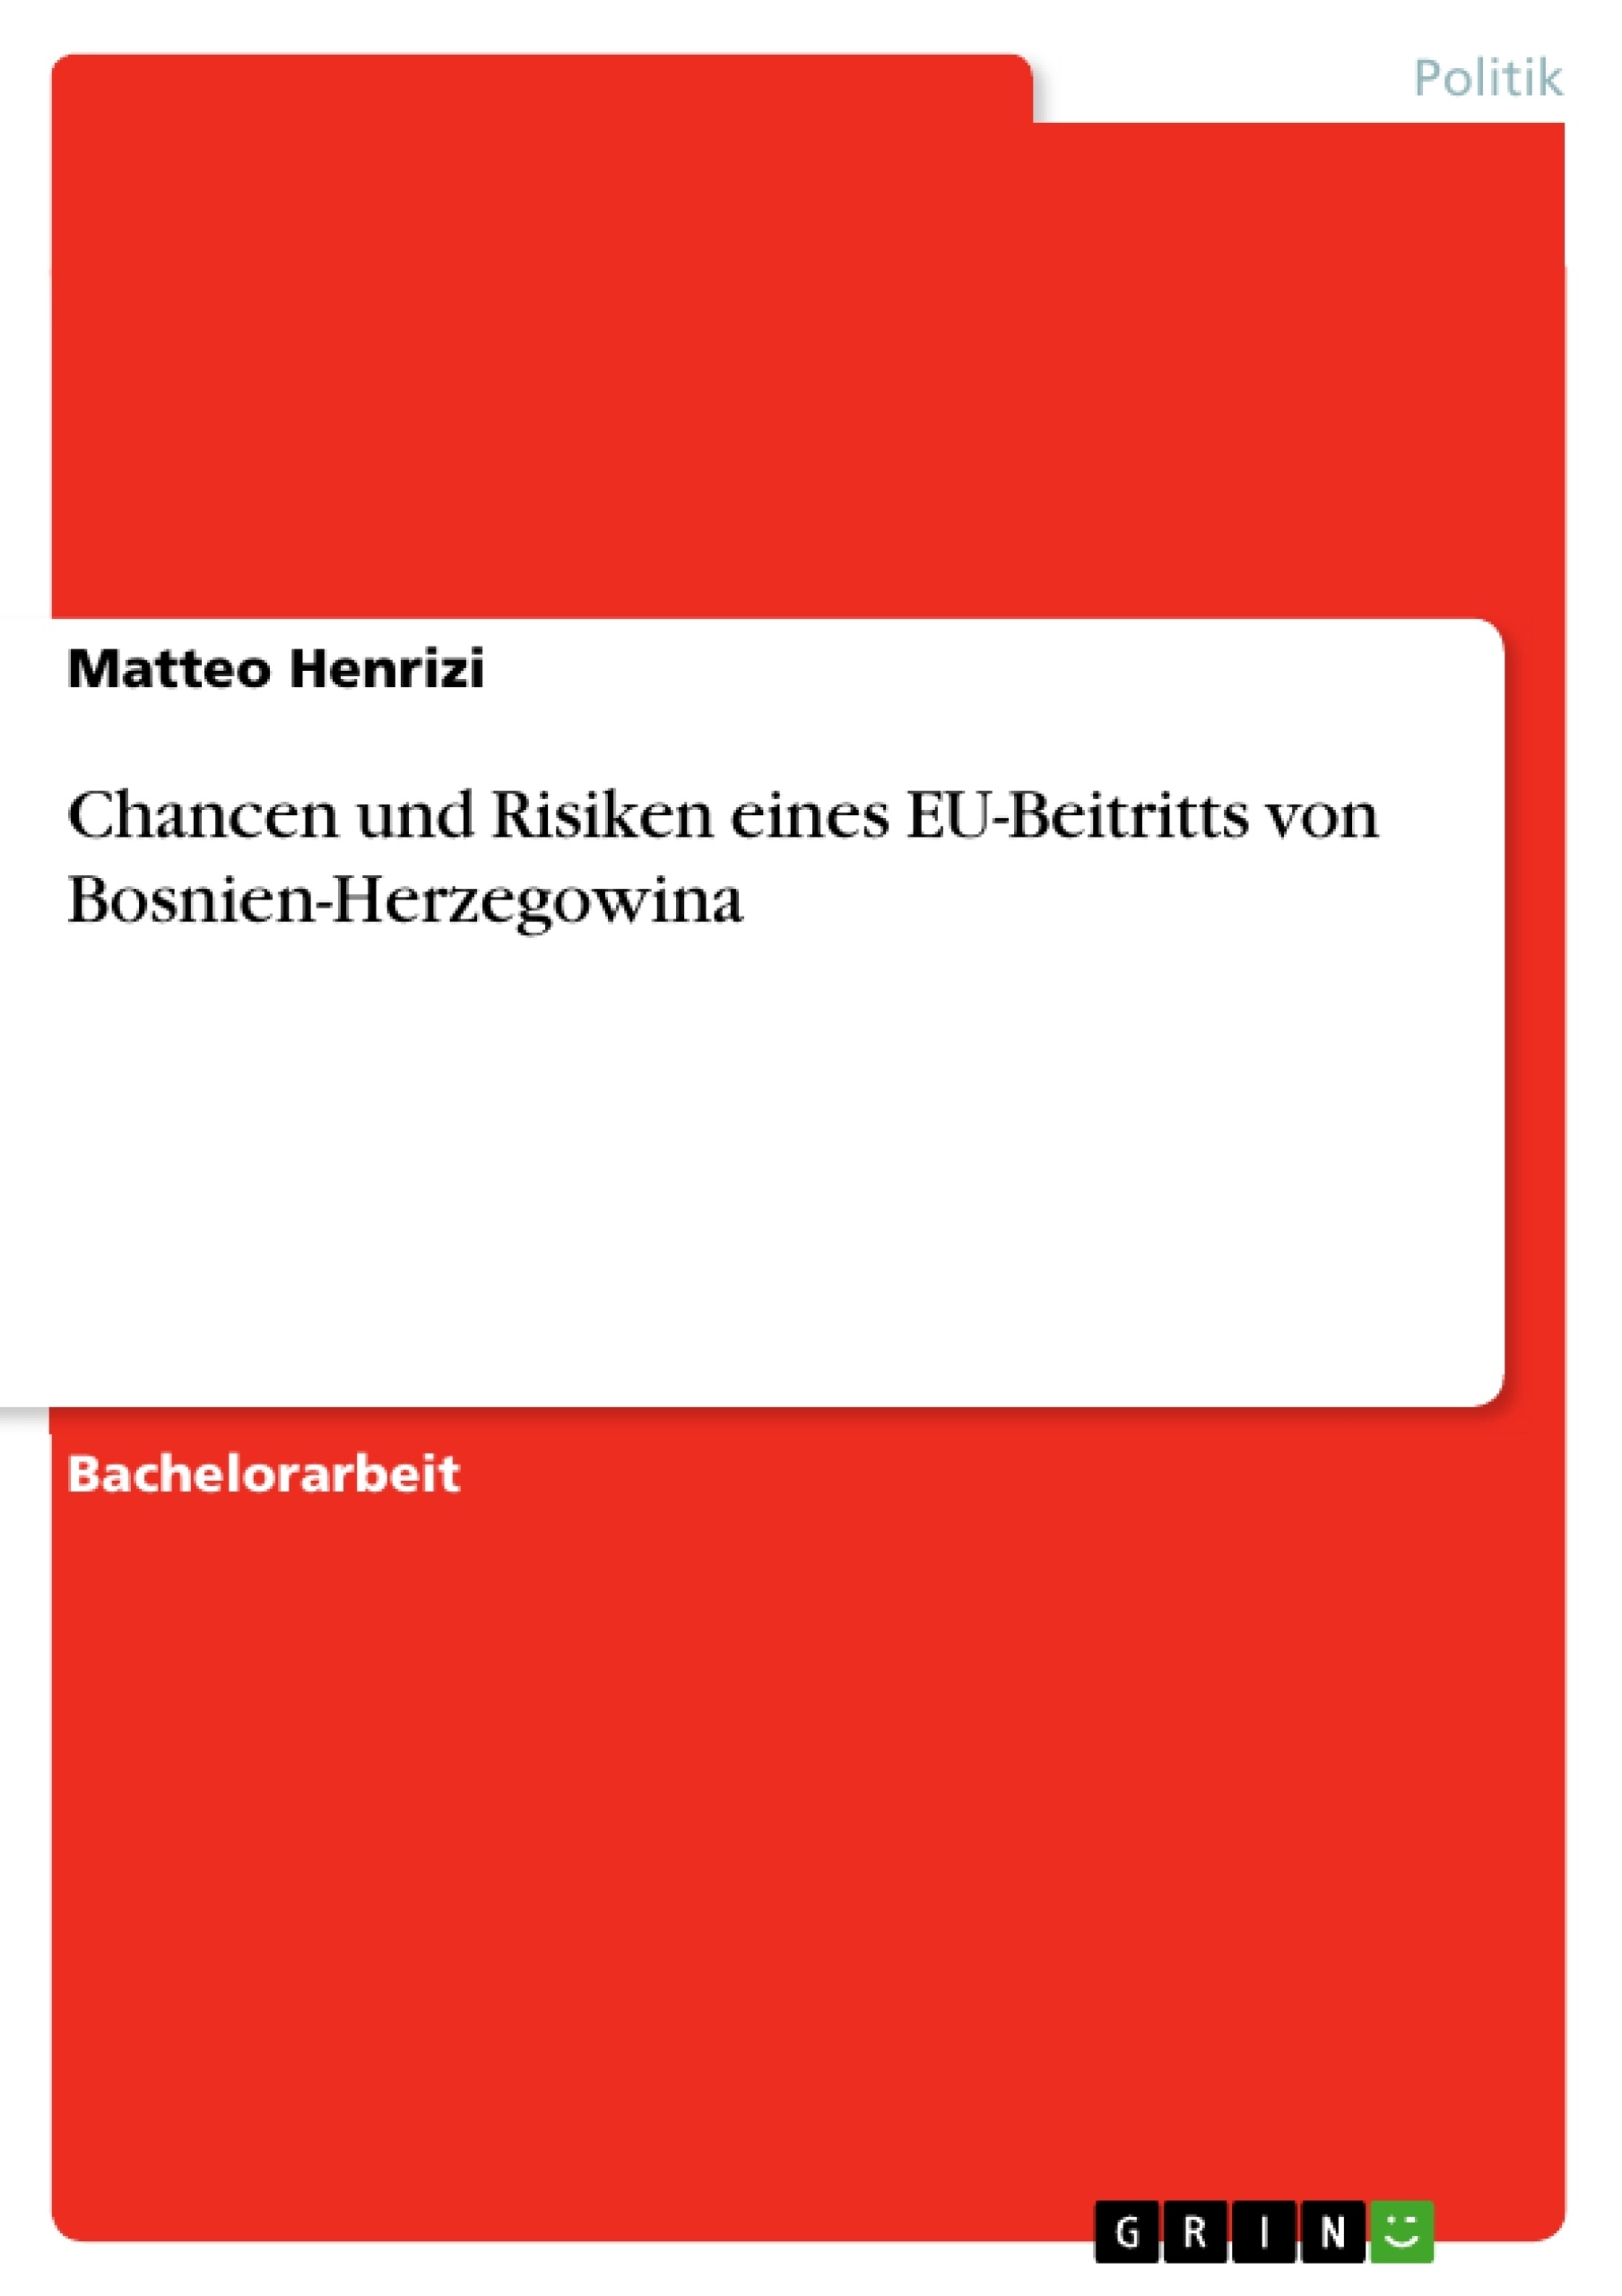 Titel: Chancen und Risiken eines EU-Beitritts von Bosnien-Herzegowina